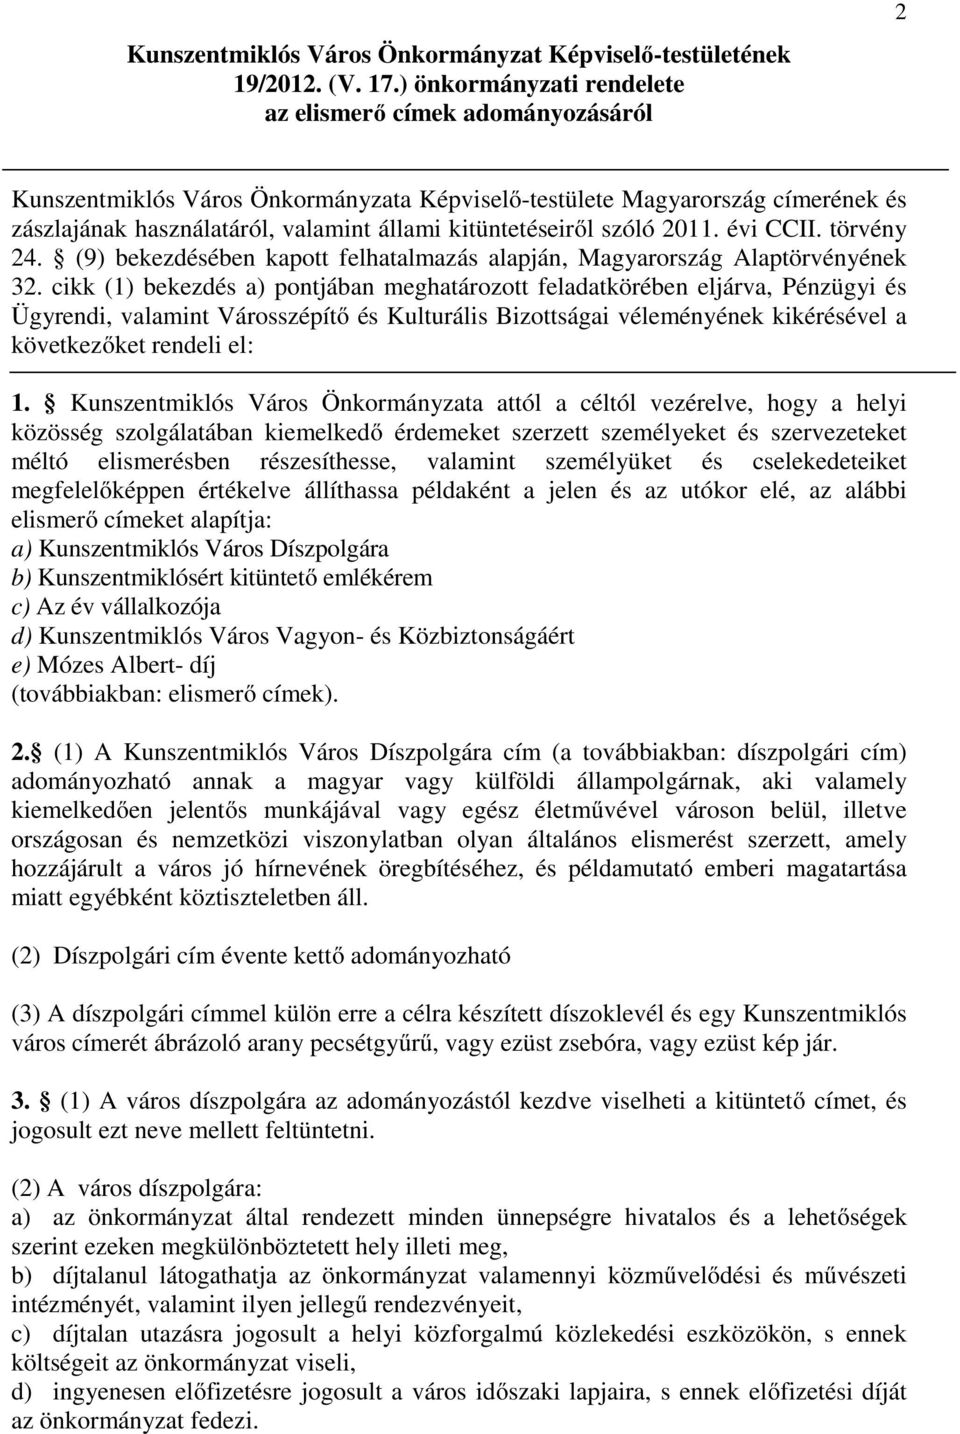 kitüntetéseiről szóló 2011. évi CCII. törvény 24. (9) bekezdésében kapott felhatalmazás alapján, Magyarország Alaptörvényének 32.